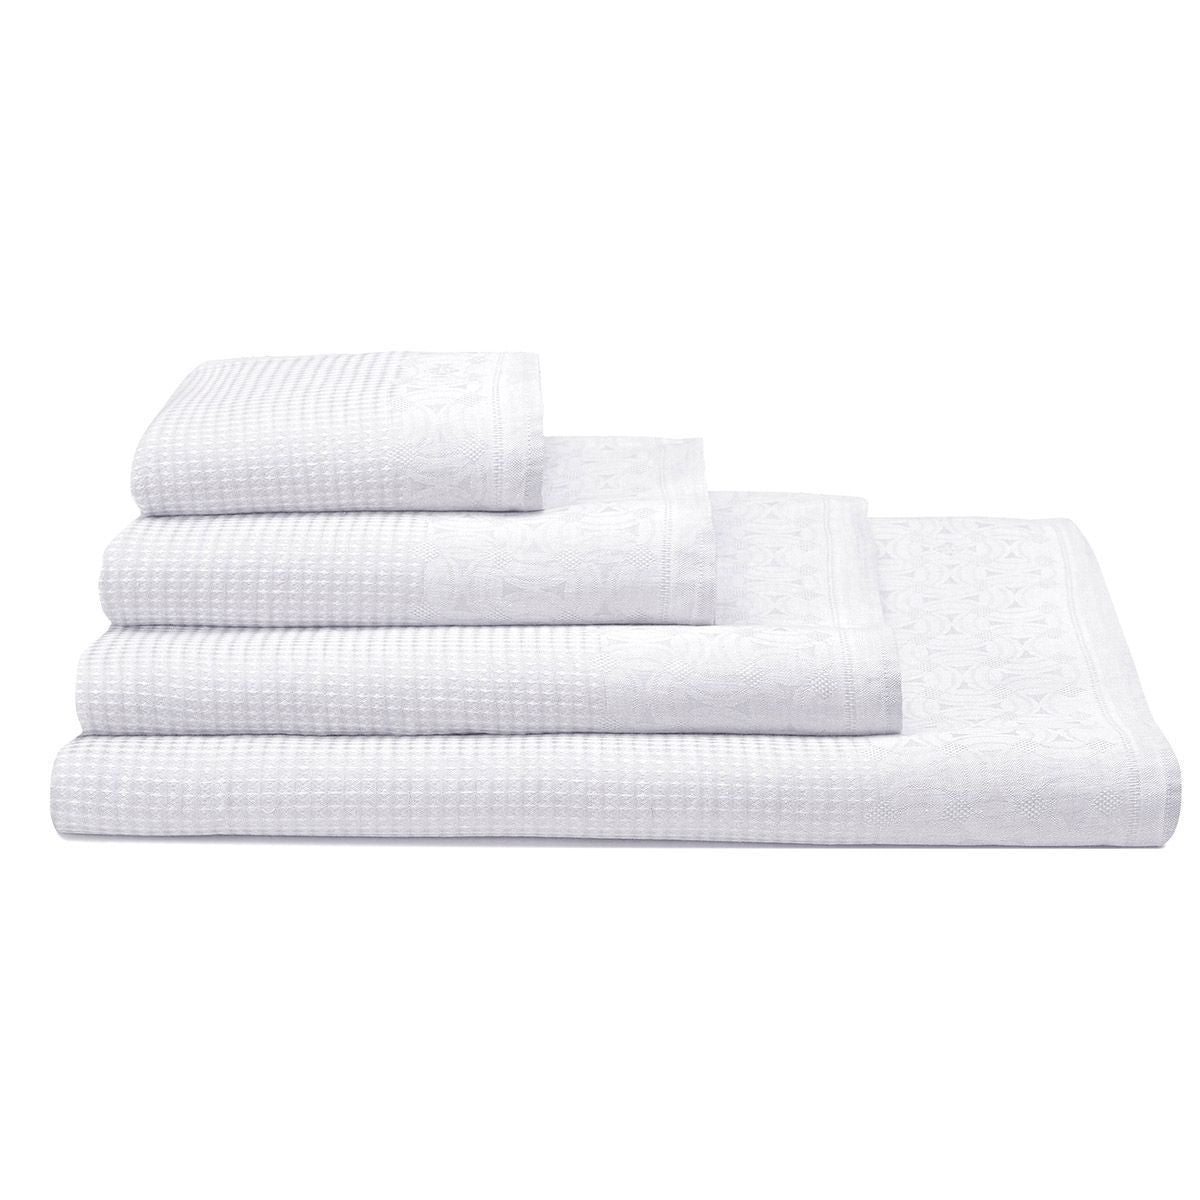 Lula White Linen Bath Towels by Le Jacquard Français | Fig Linens